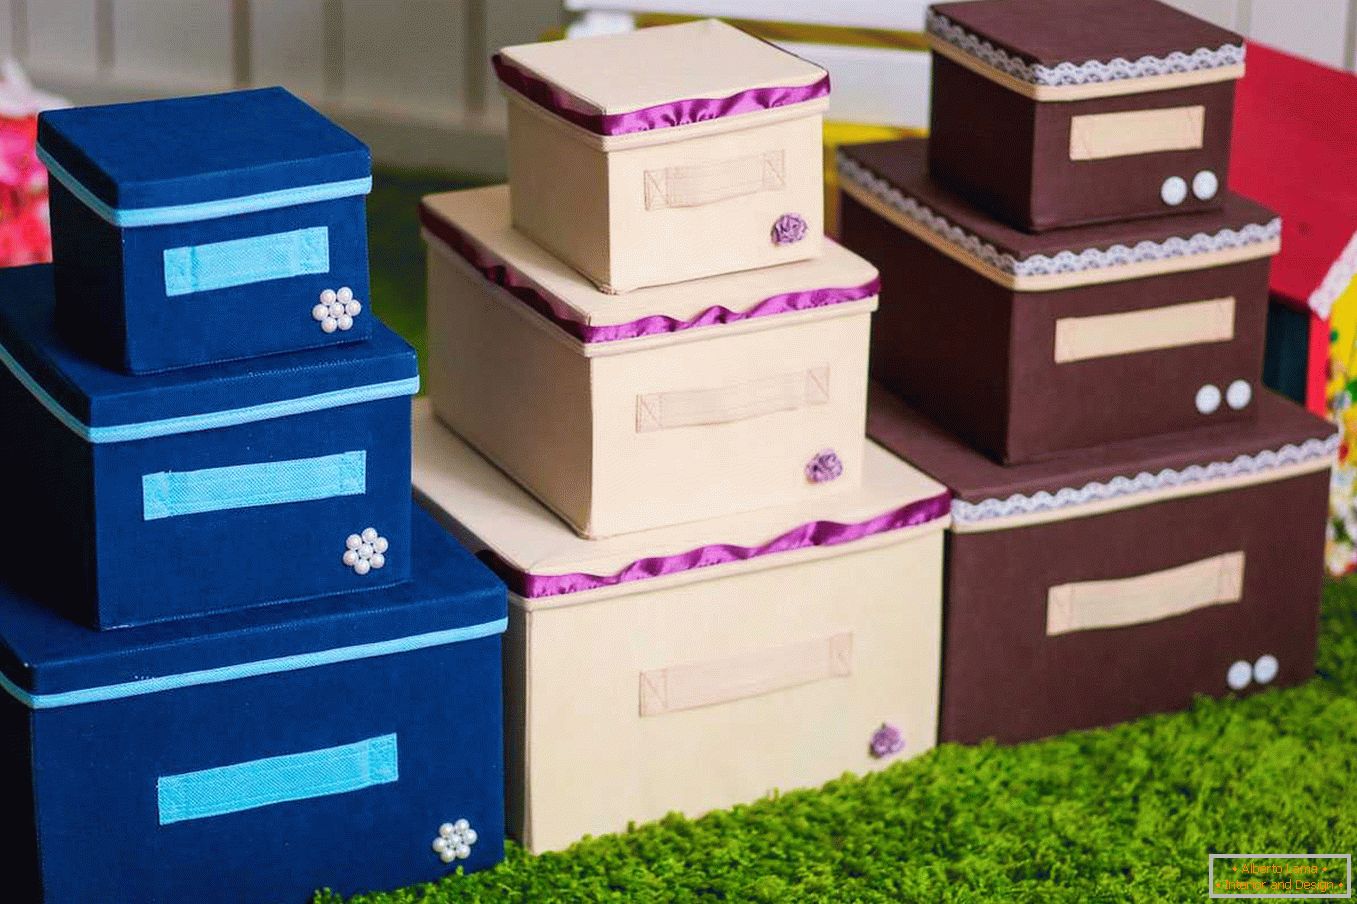 Multicolored storage boxes